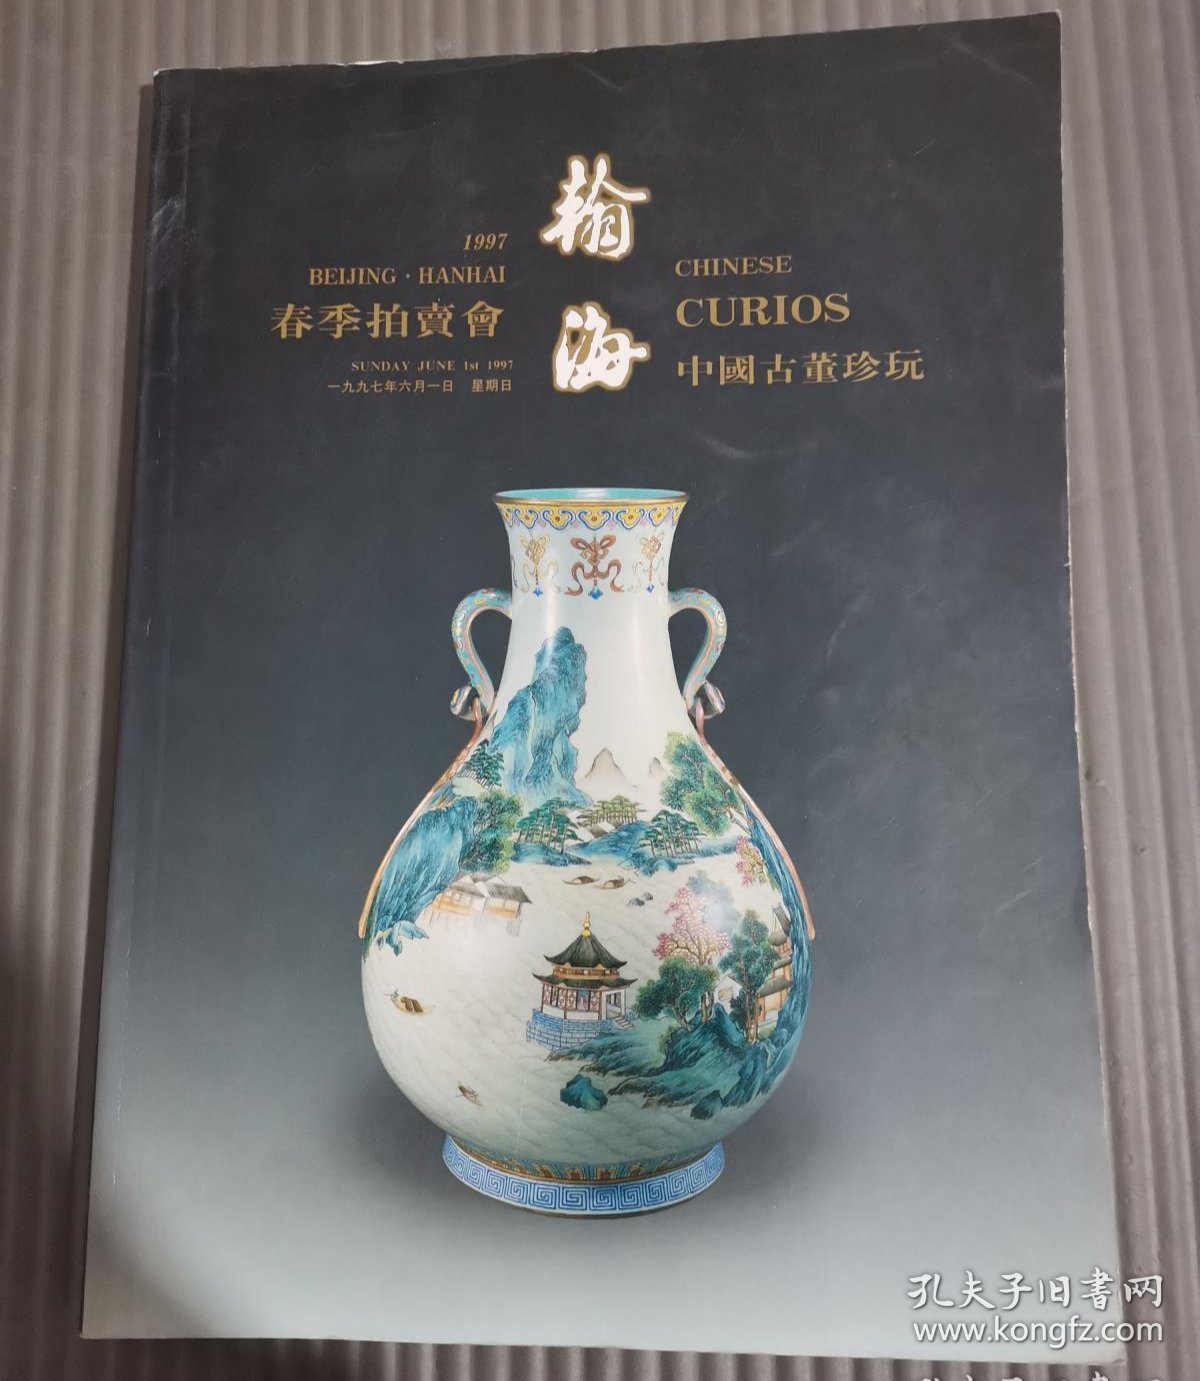 北京翰海1997年6月1日春季拍卖会 中国古董珍玩 拍卖图录 瀚海瓷器大拍图录